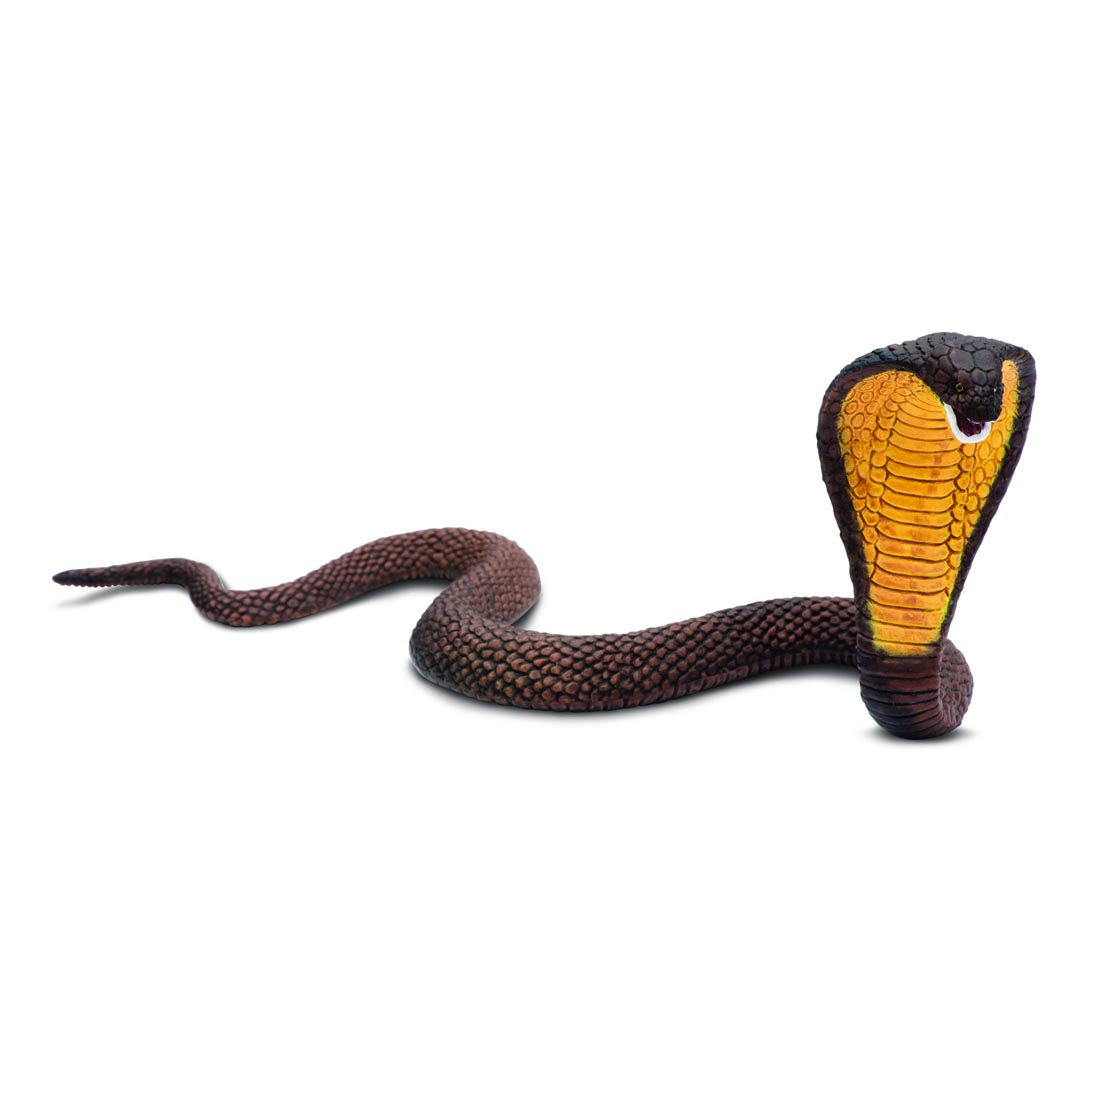 Cobra Snake Figurine